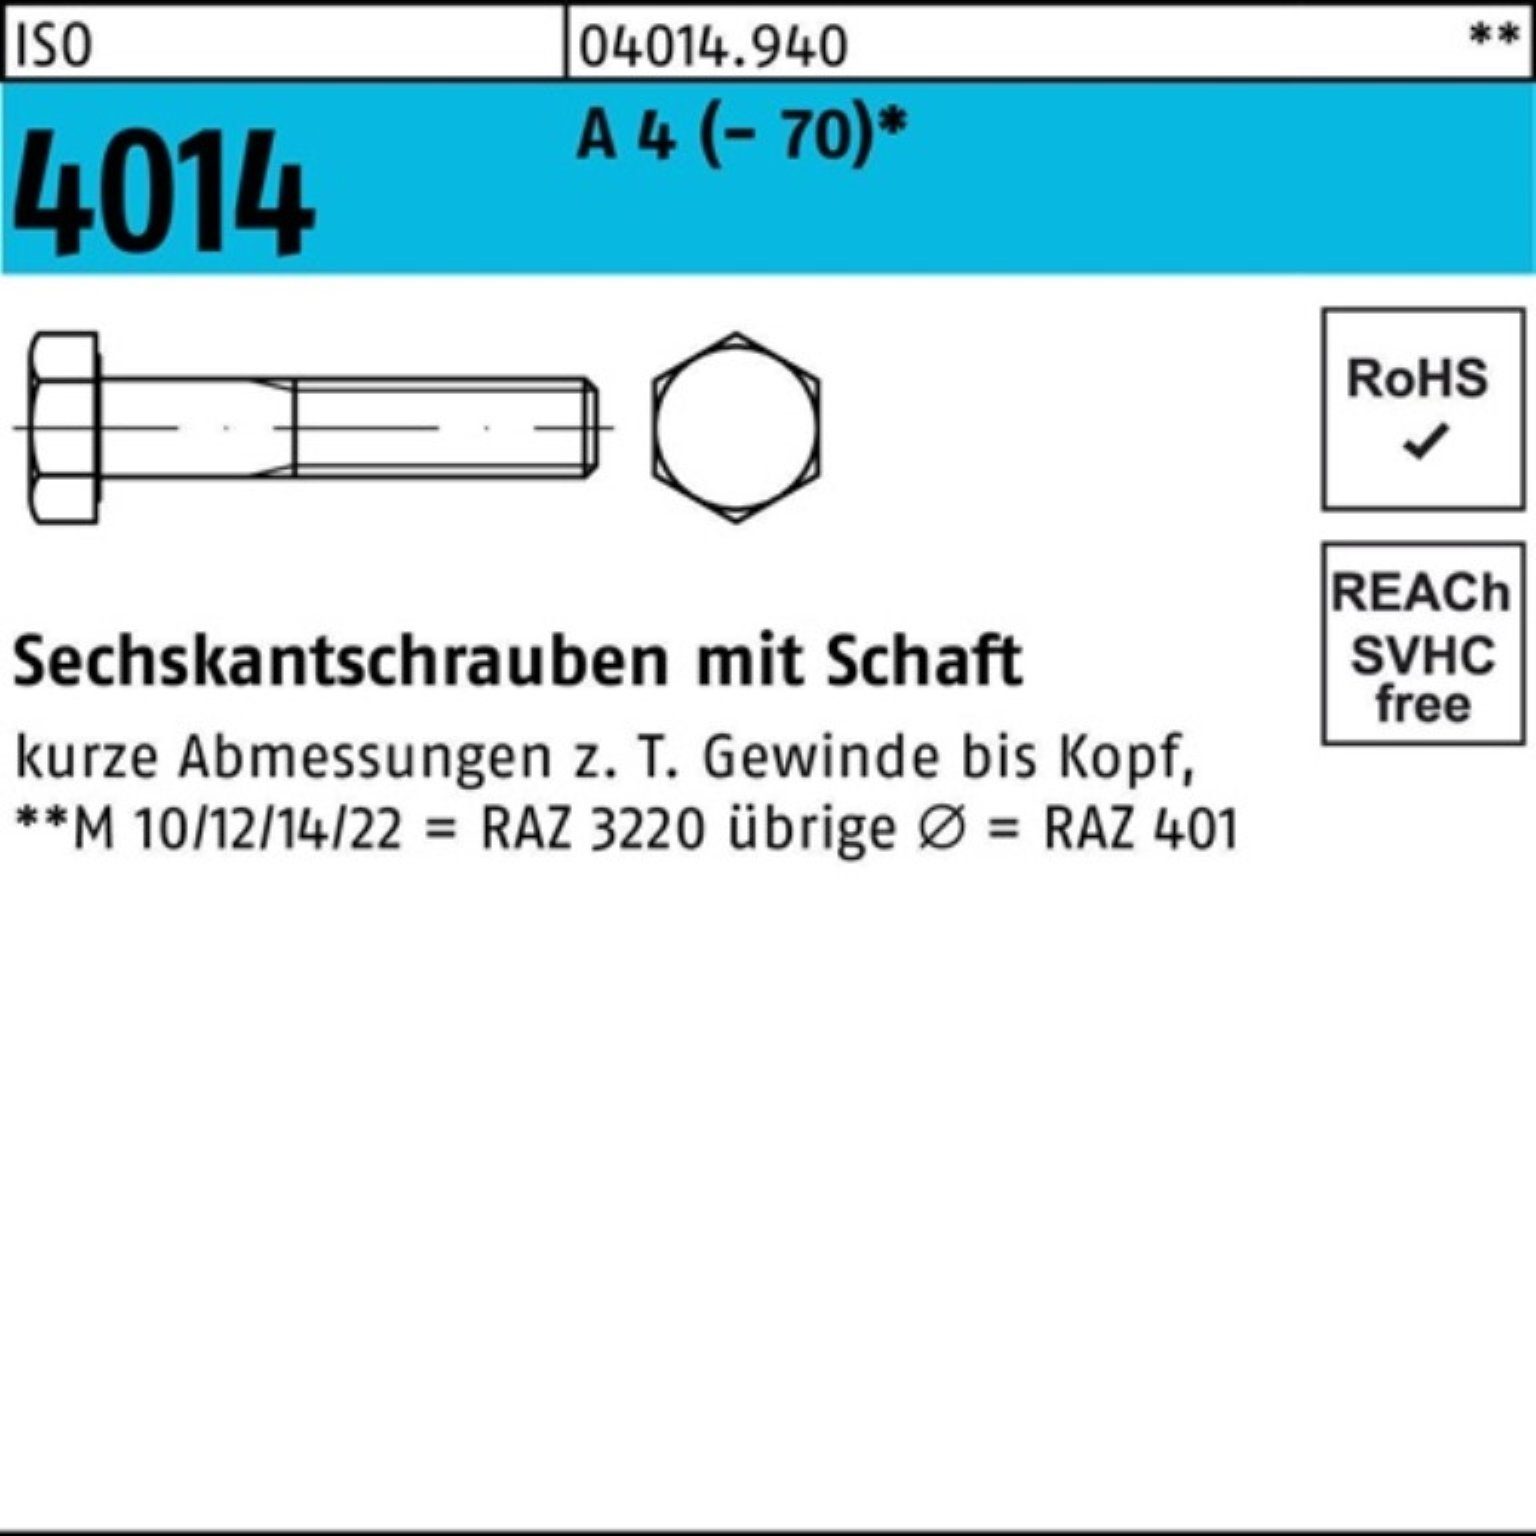 Bufab Sechskantschraube 100er Pack Sechskantschraube M20x 4 St 250 A Schaft 4014 (70) ISO 1